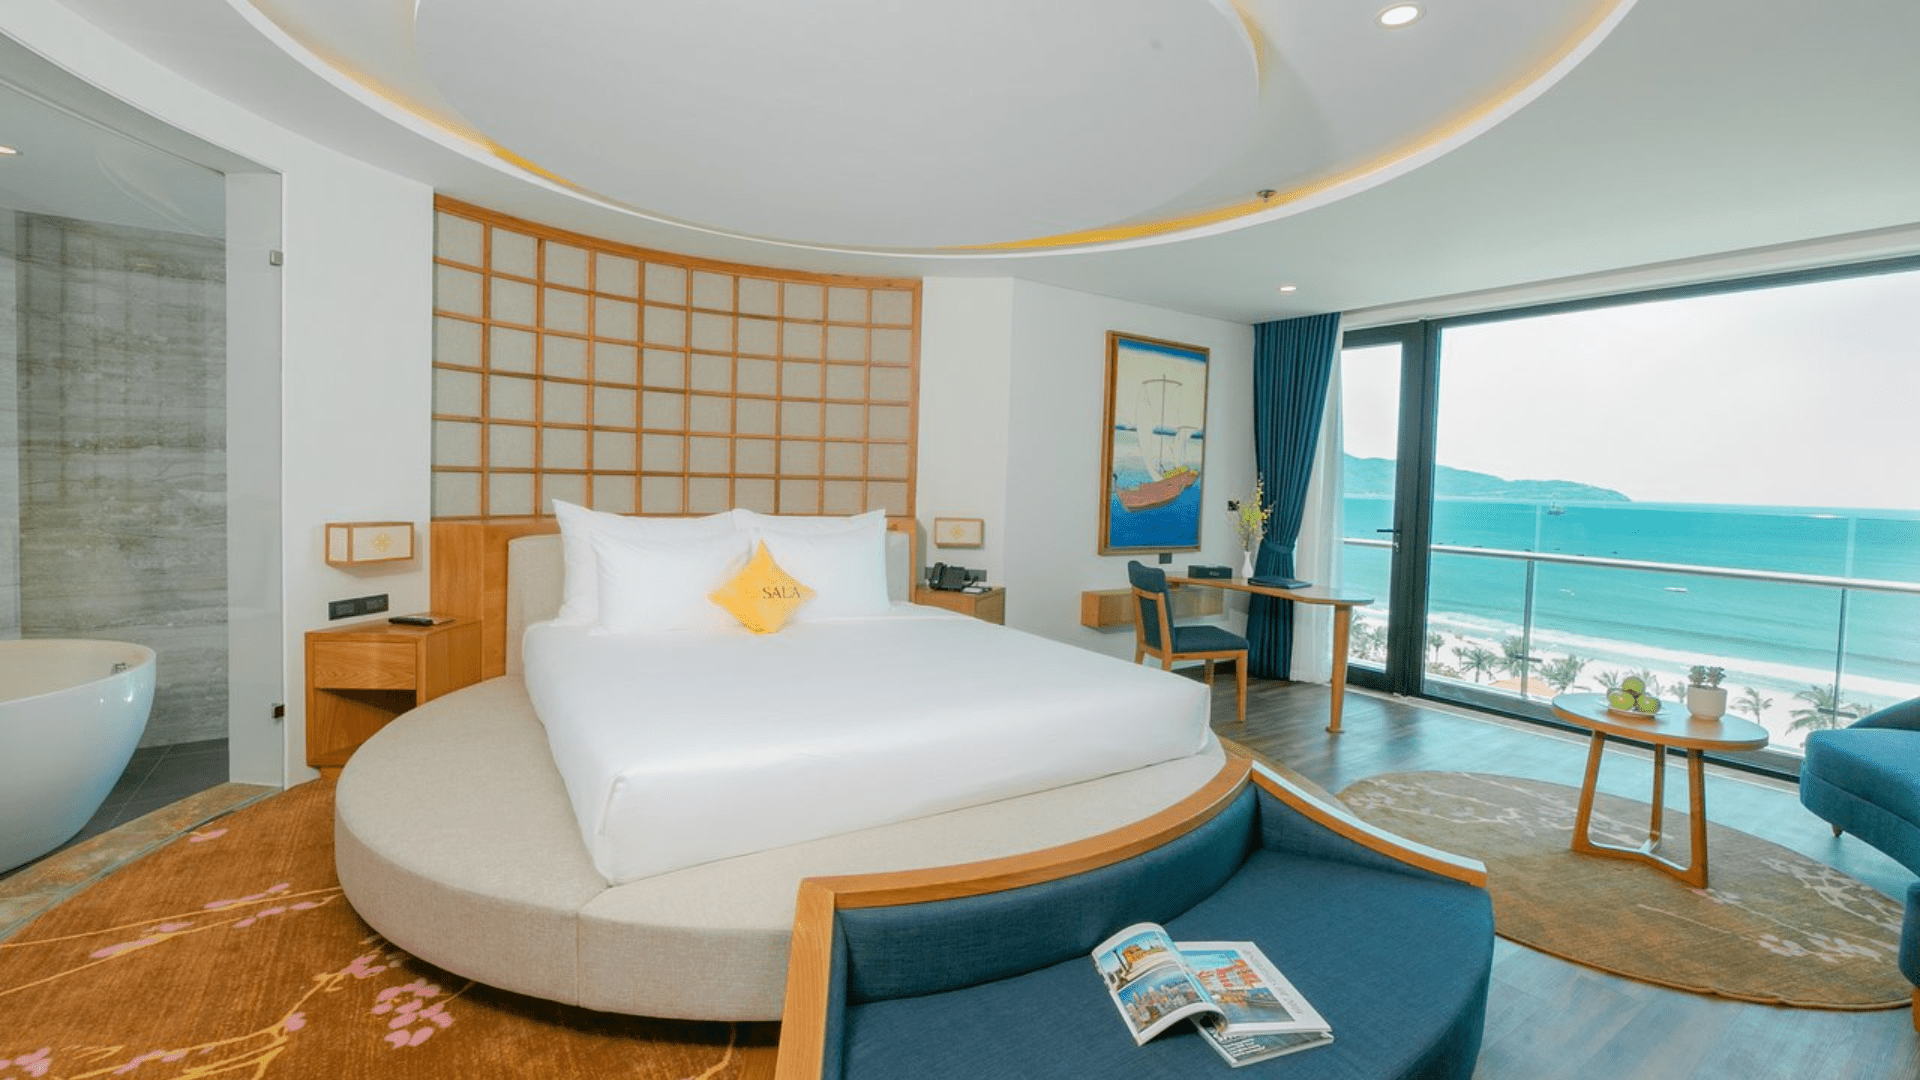 Pulchra Resort - Resort & khách sạn 5 sao Đà Nẵng